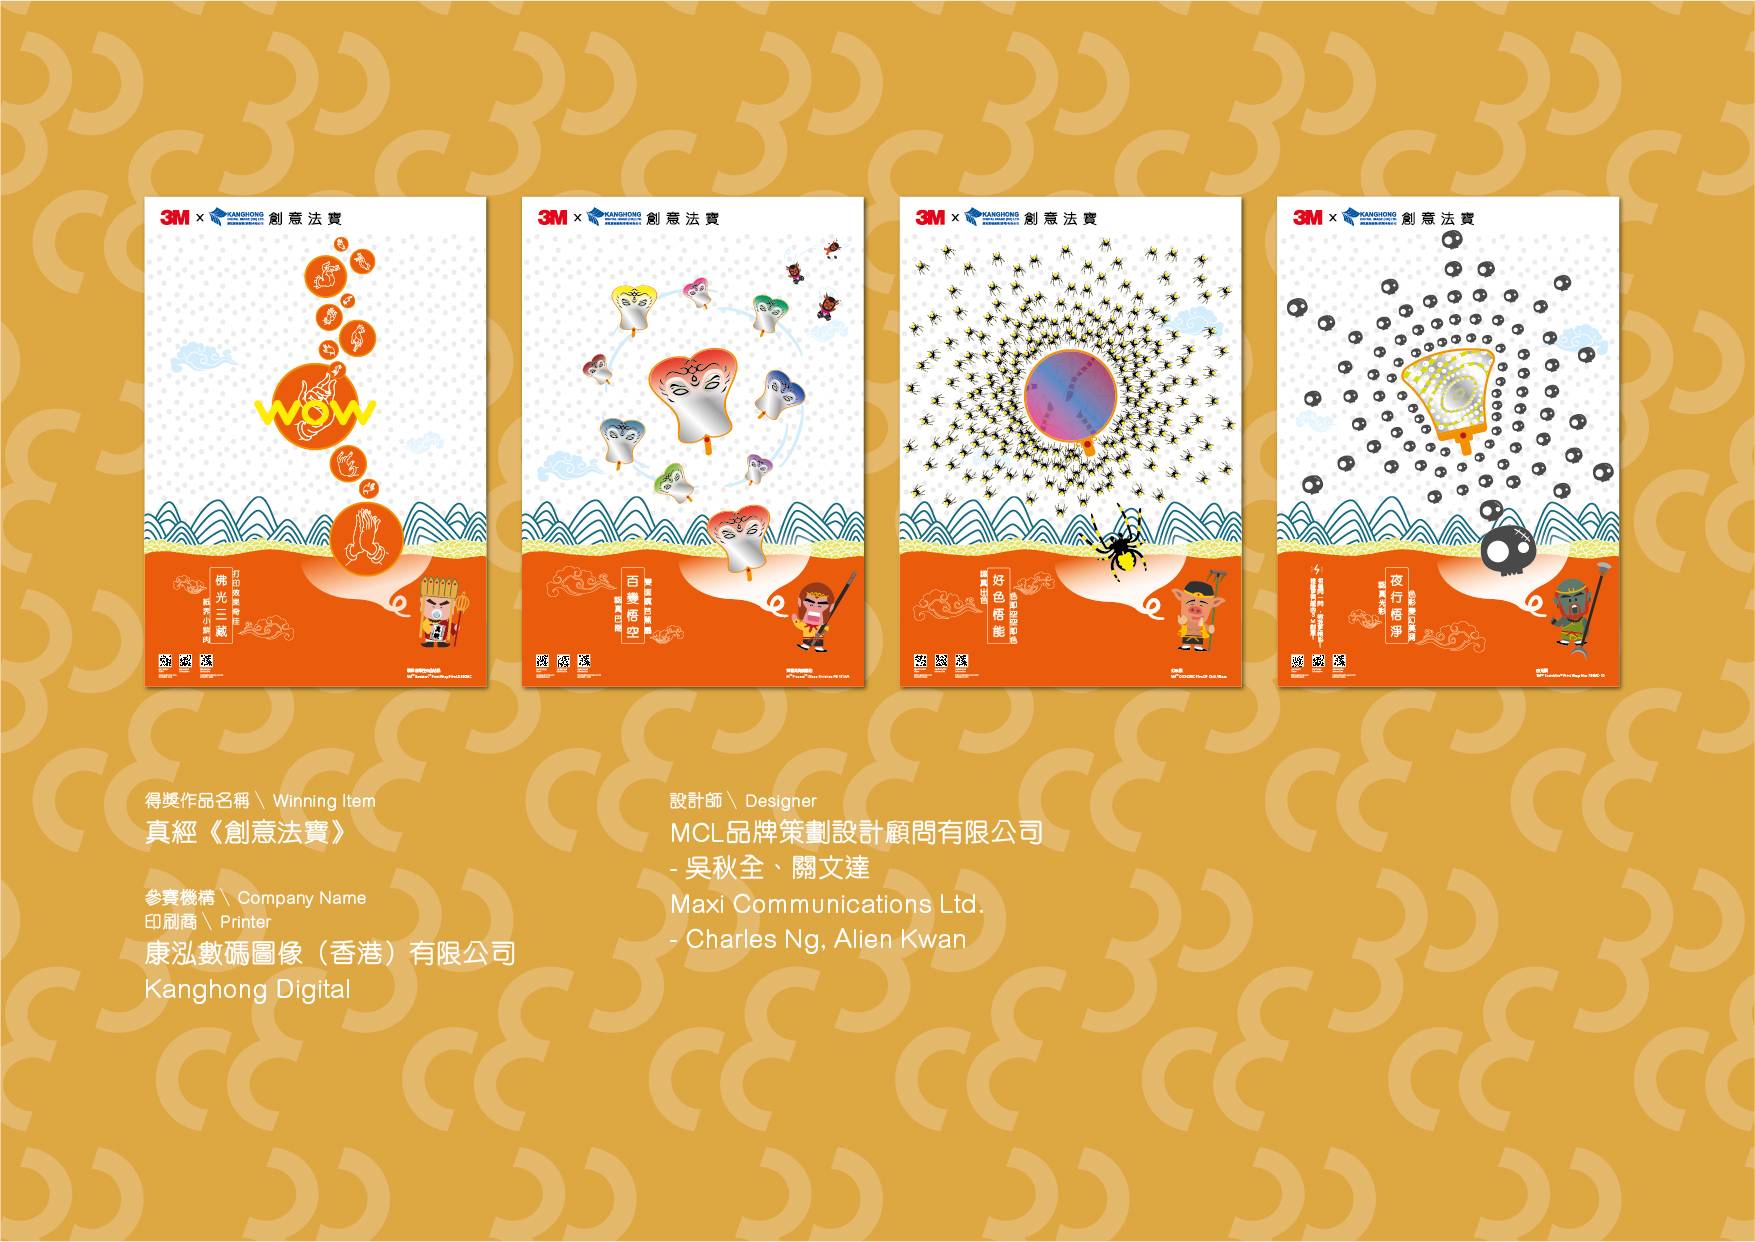 3M 為第 30 屆香港印製大獎 2018 推出新紙品概念海報 獲獎作品